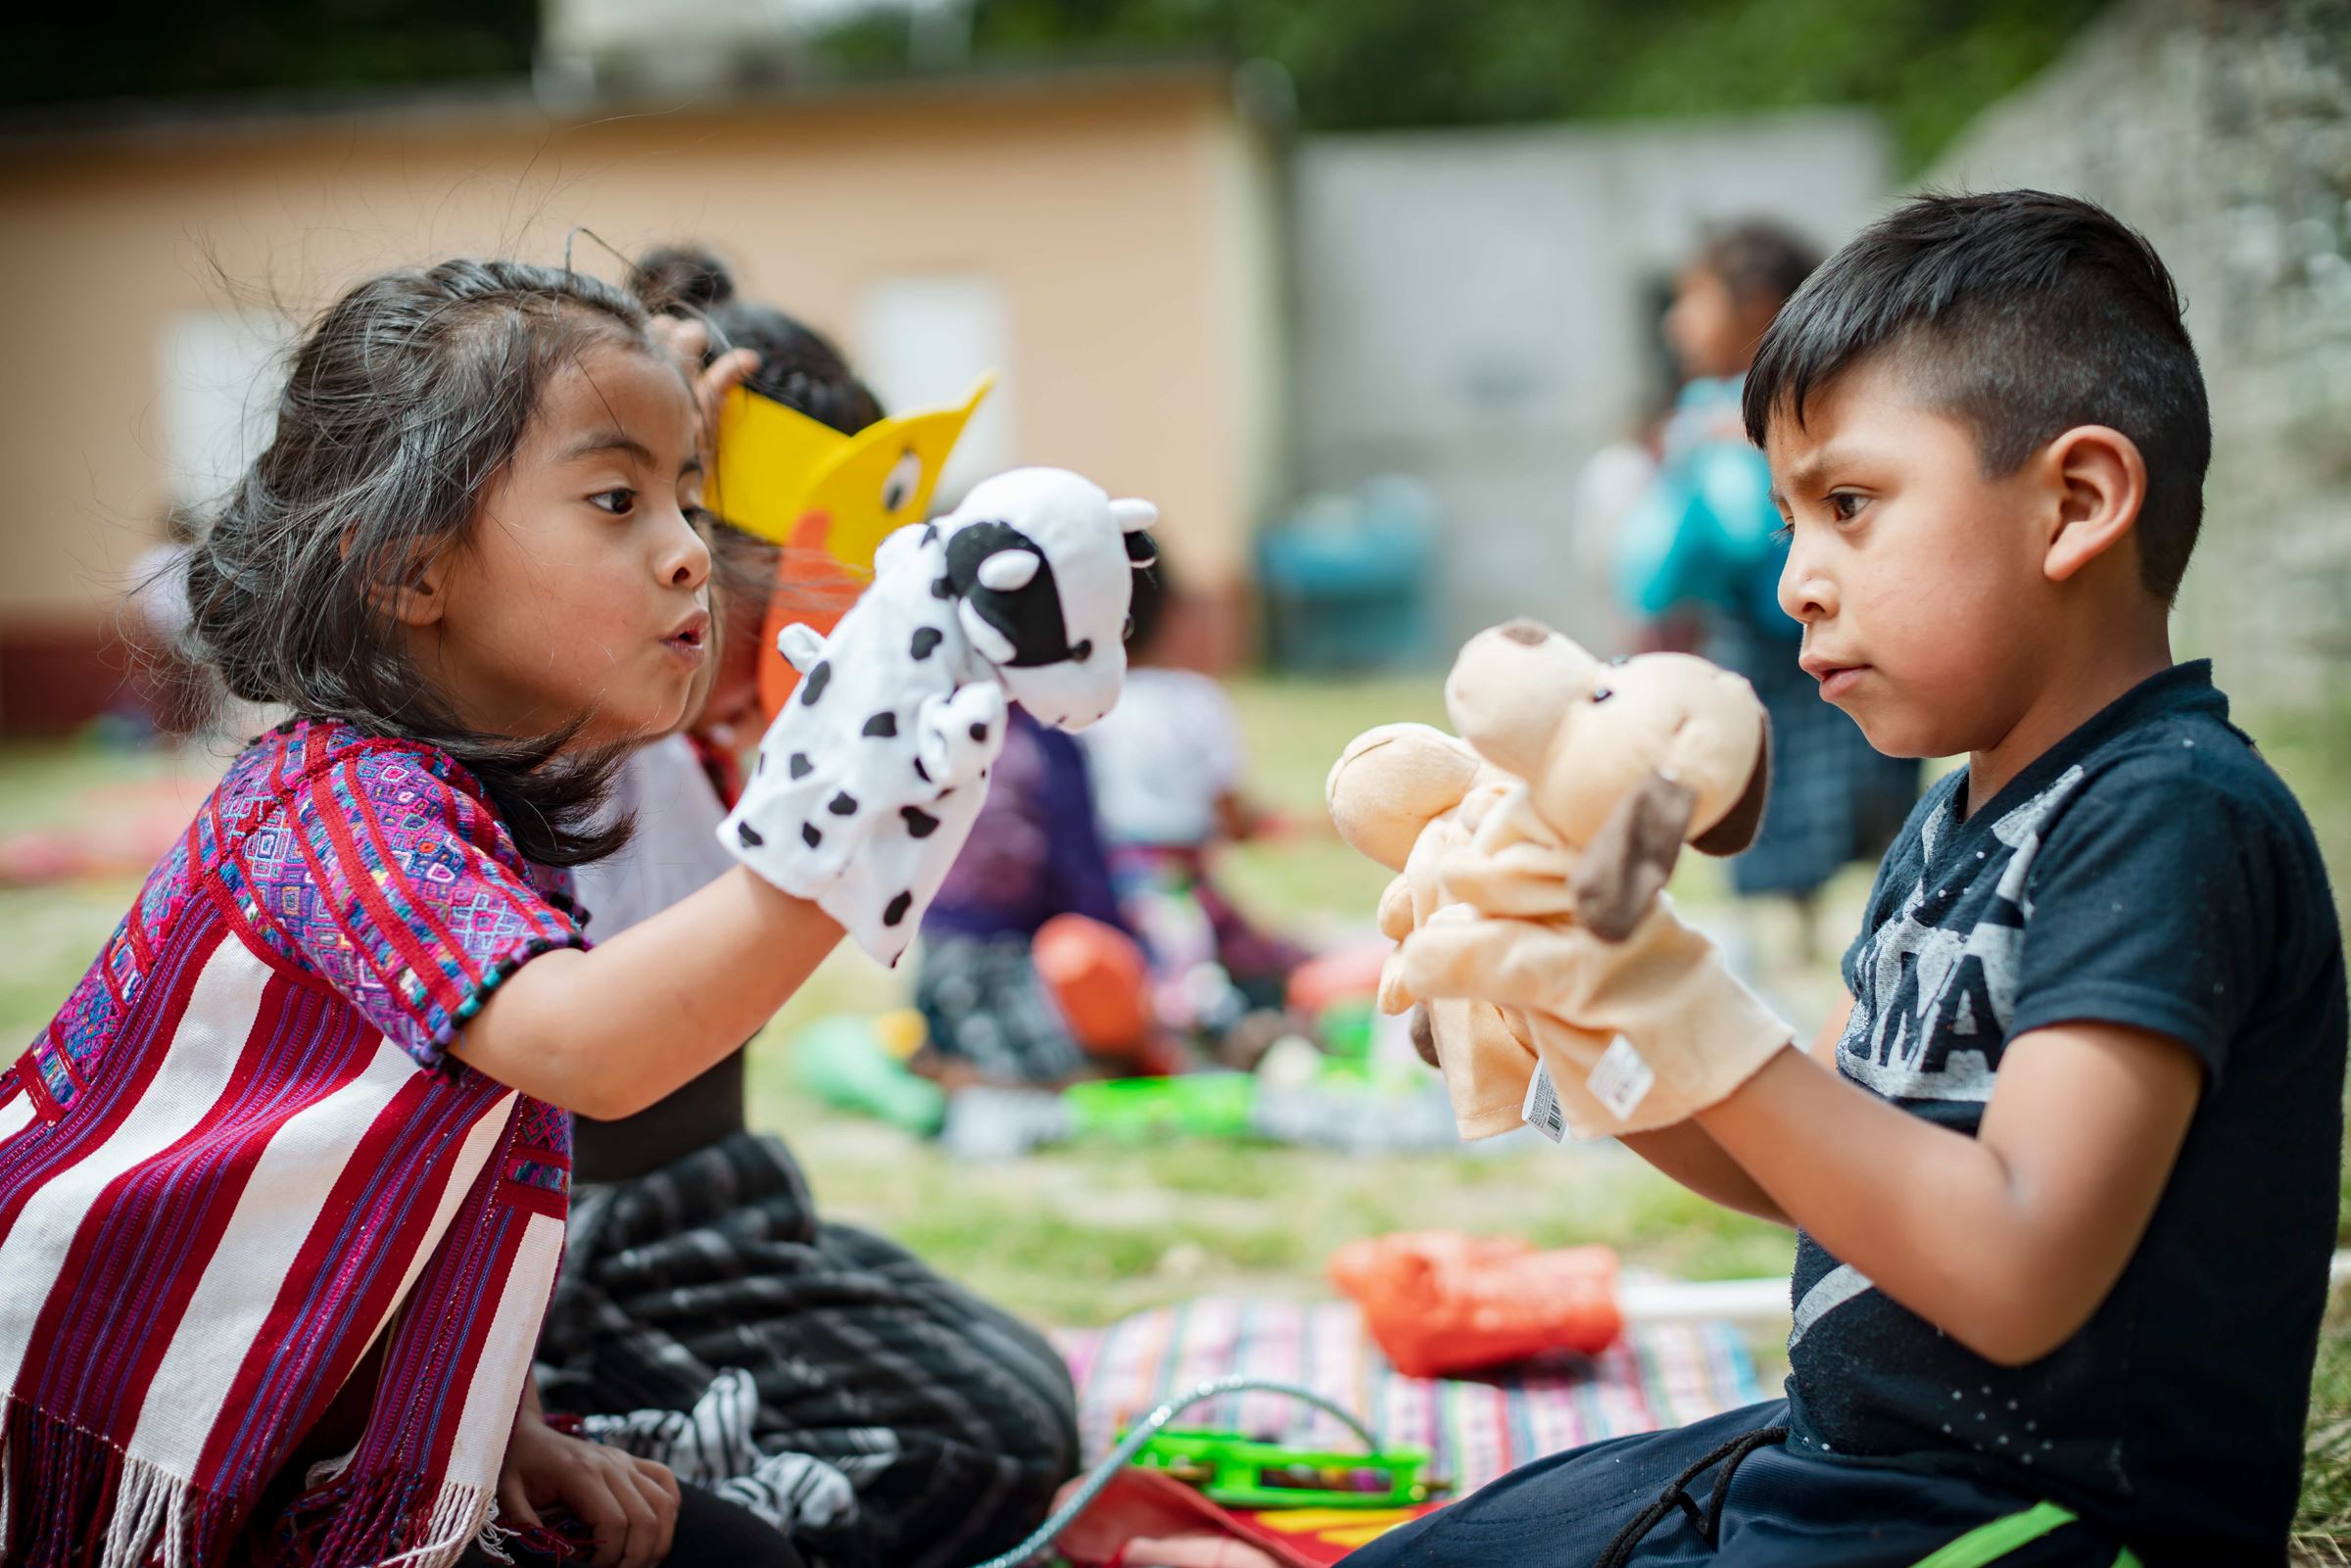 Vorschulkinder im Kindernothilfeprojekt in Guatemala spielen mit Handpuppen (Quelle: Jakob Studnar)